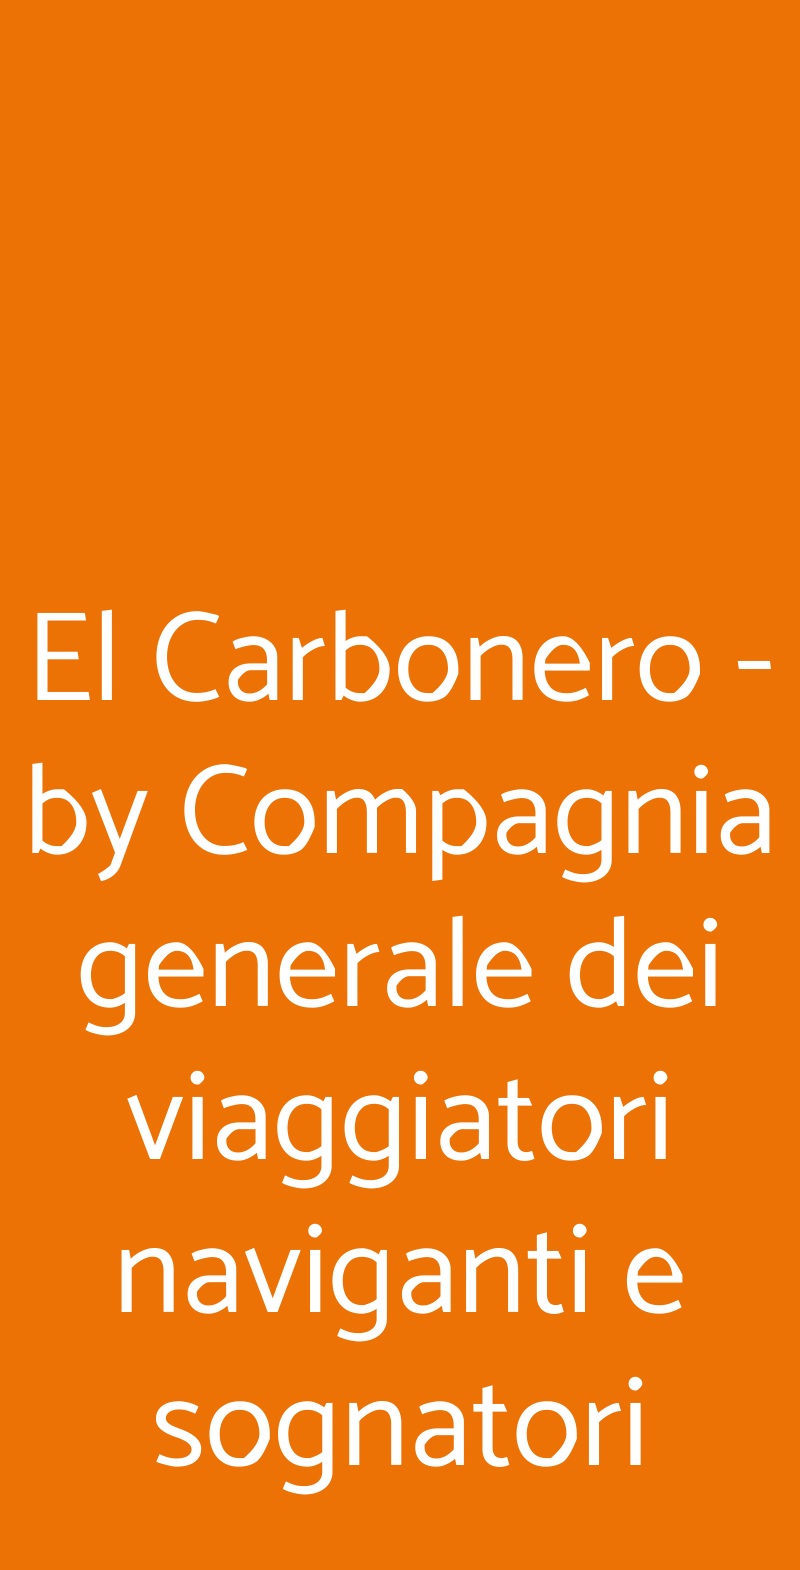 El Carbonero - by Compagnia generale dei viaggiatori naviganti e sognatori Milano menù 1 pagina